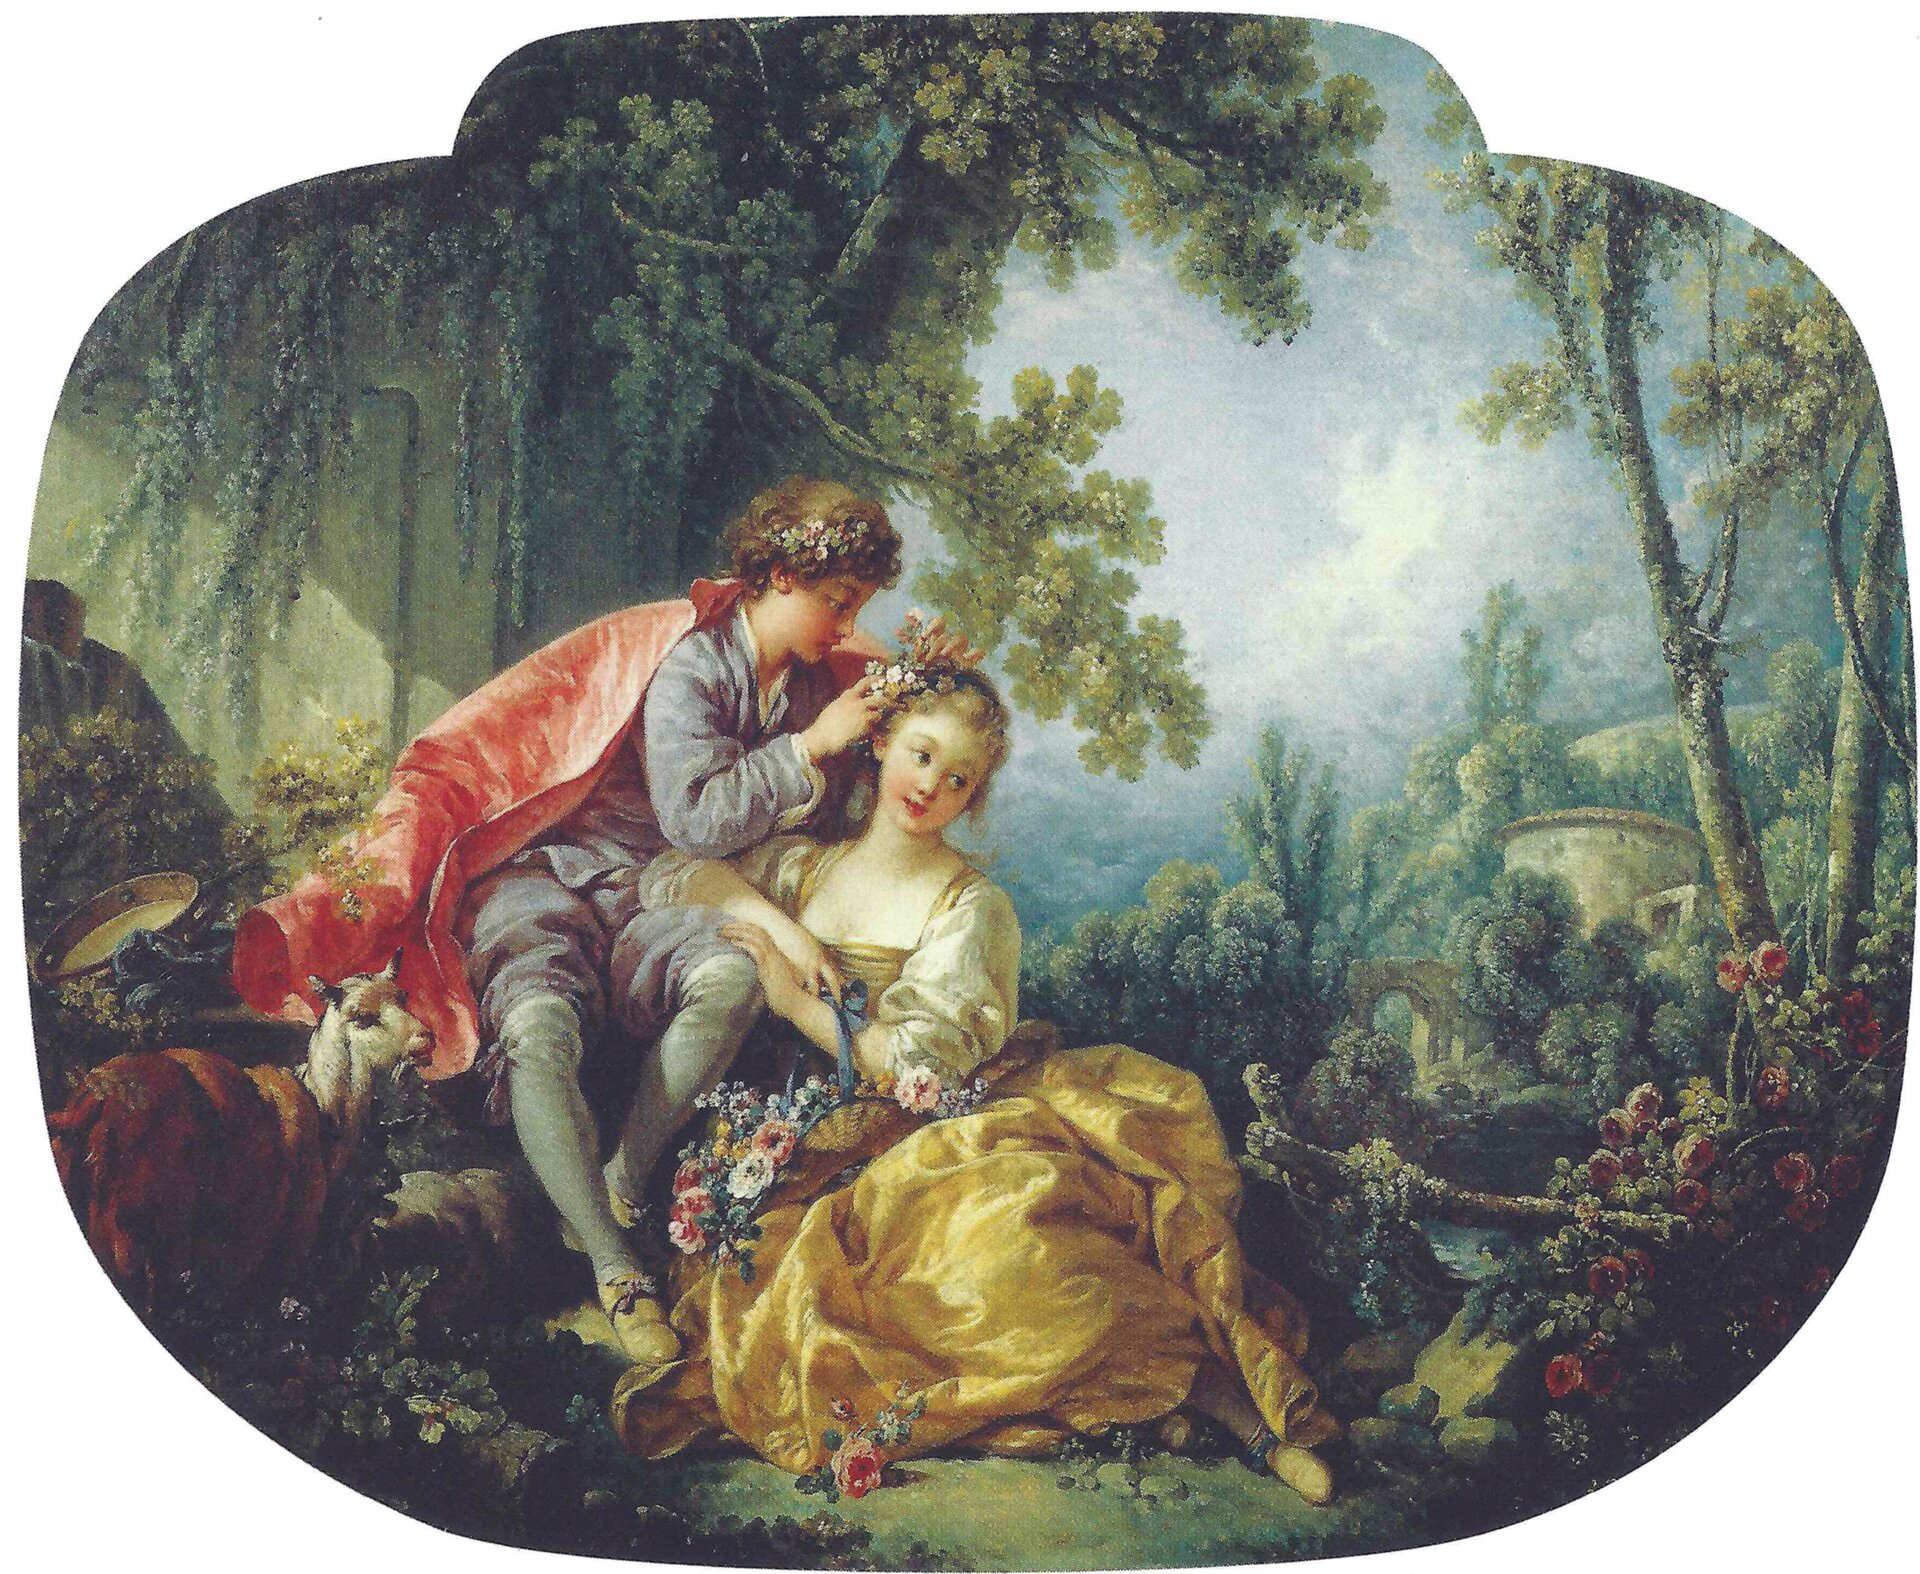 Obraz przedstawia dziewczynę i chłopaka, siedzą w otoczeniu drzew i krzewów. Chłopiec wplata we włosy dziewczyny kwiaty. Sam rownież ma kwiaty we włosach. Obok młodych koza.  